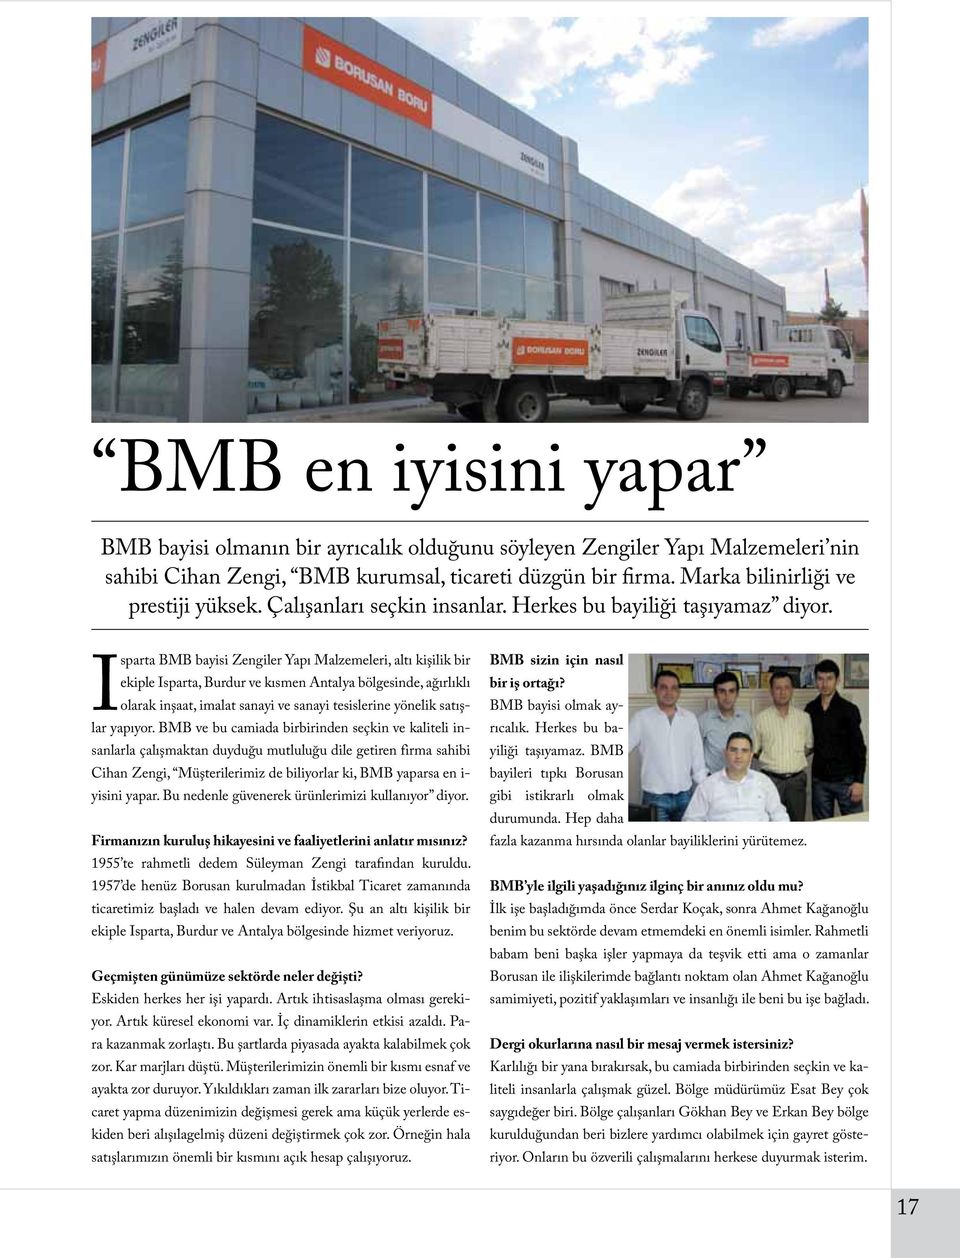 Isparta BMB bayisi Zengiler Yapı Malzemeleri, altı kişilik bir ekiple Isparta, Burdur ve kısmen Antalya bölgesinde, ağırlıklı olarak inşaat, imalat sanayi ve sanayi tesislerine yönelik satışlar